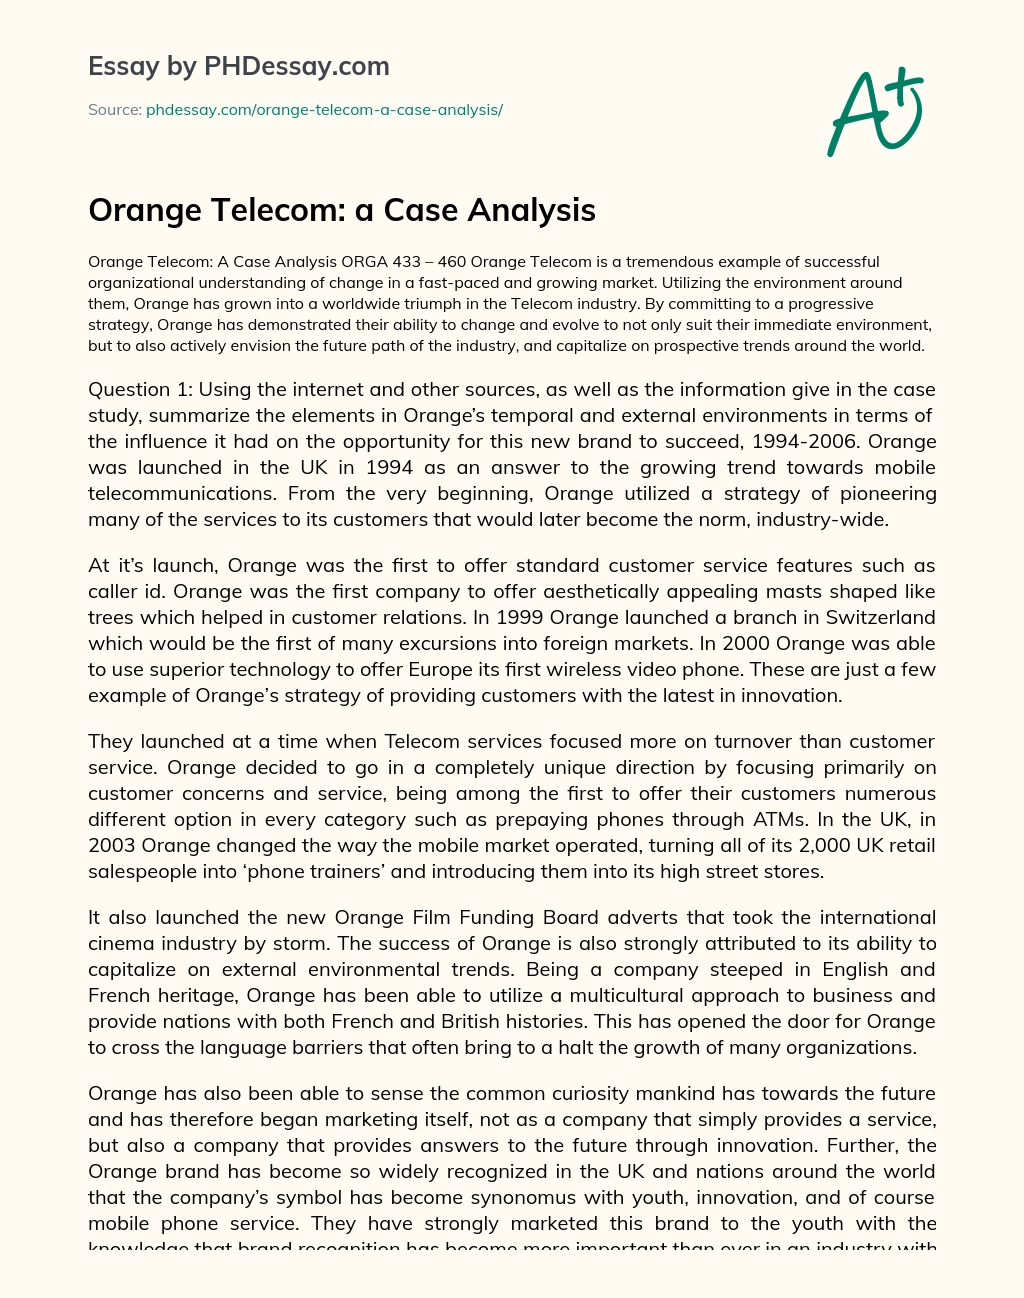 Orange Telecom: a Case Analysis essay